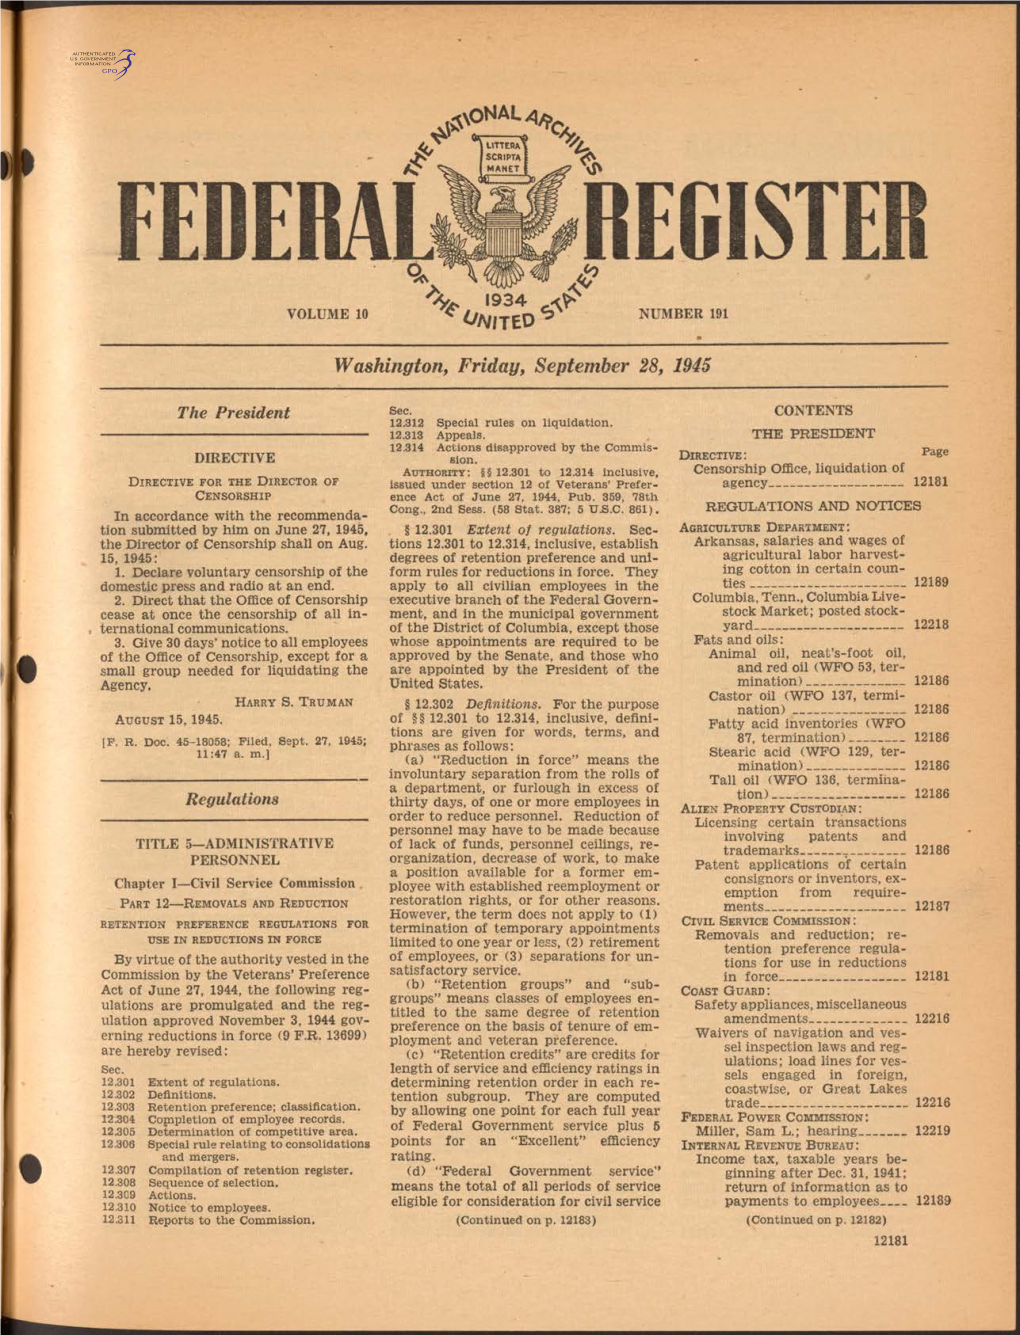 REGISTE '9 3 4 VOLUME 10 NUMBER 191 * O N N to ^ Washington, Friday, September 28, 1945